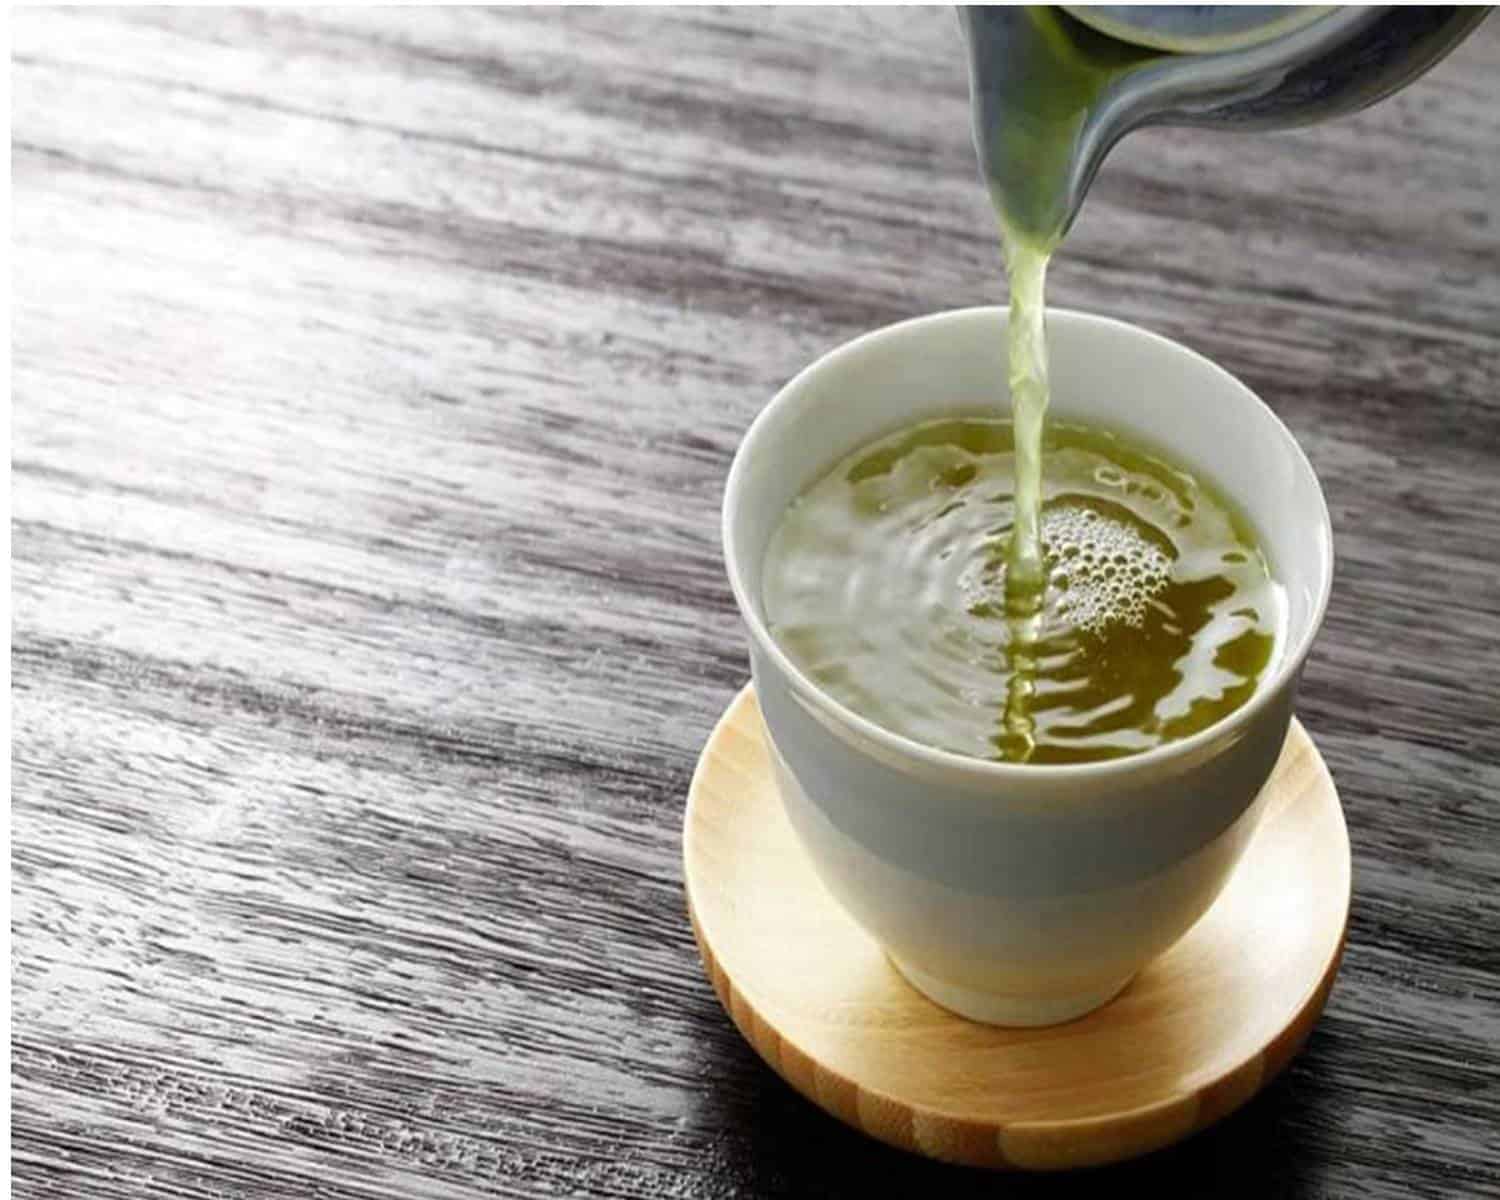 Hidrate o seu corpo e cuide da sua saúde com este refrescante chá de limão